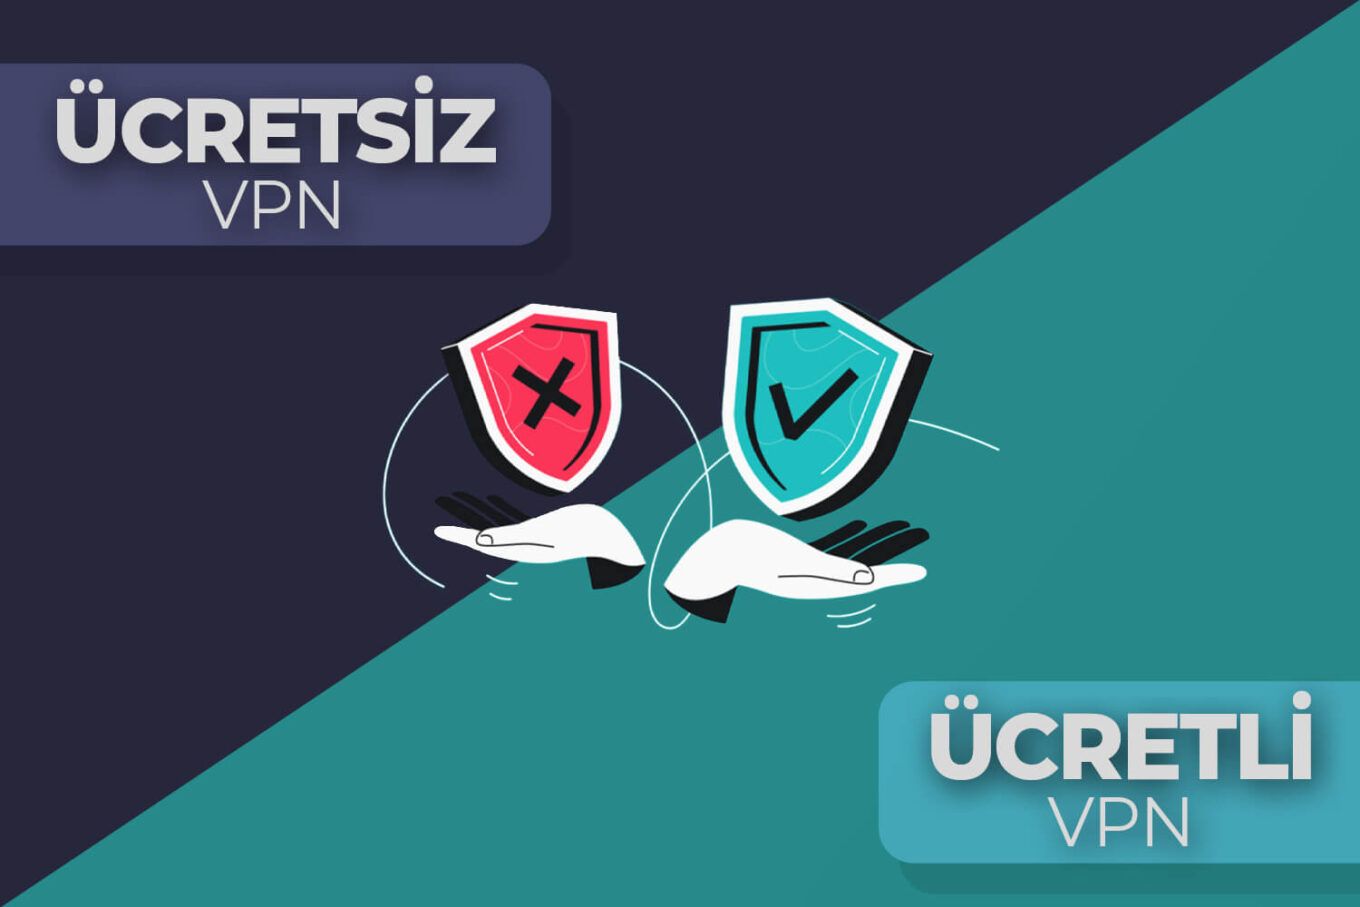 Ücretsiz VPN vs Ücretli VPN